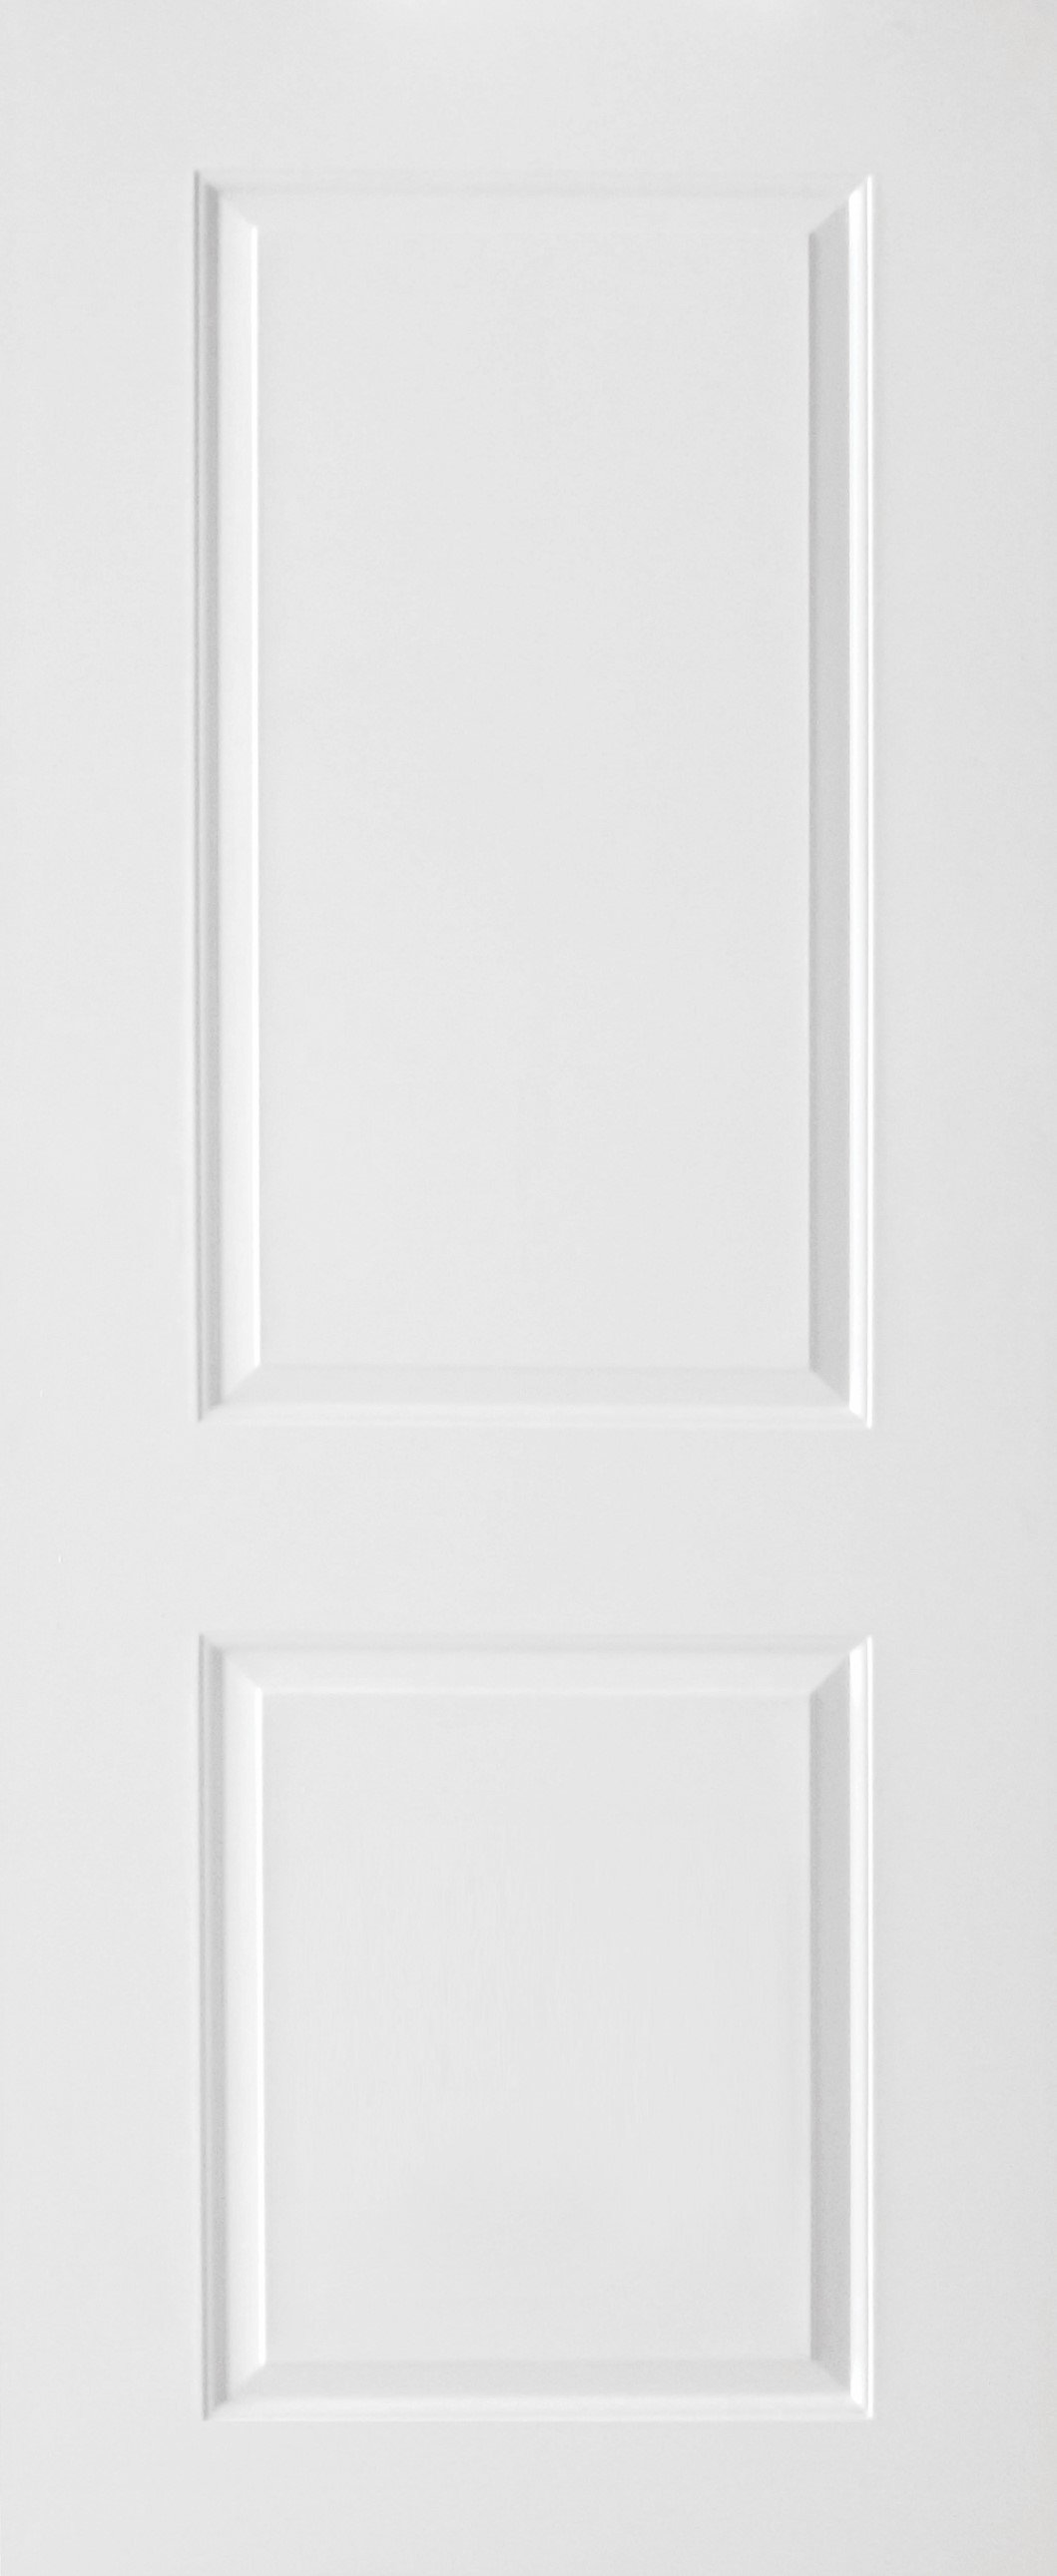 ประตูUPVC ผิวหน้าลายไม้ สีขาว บานลูกฟัก 2 ช่องตรง